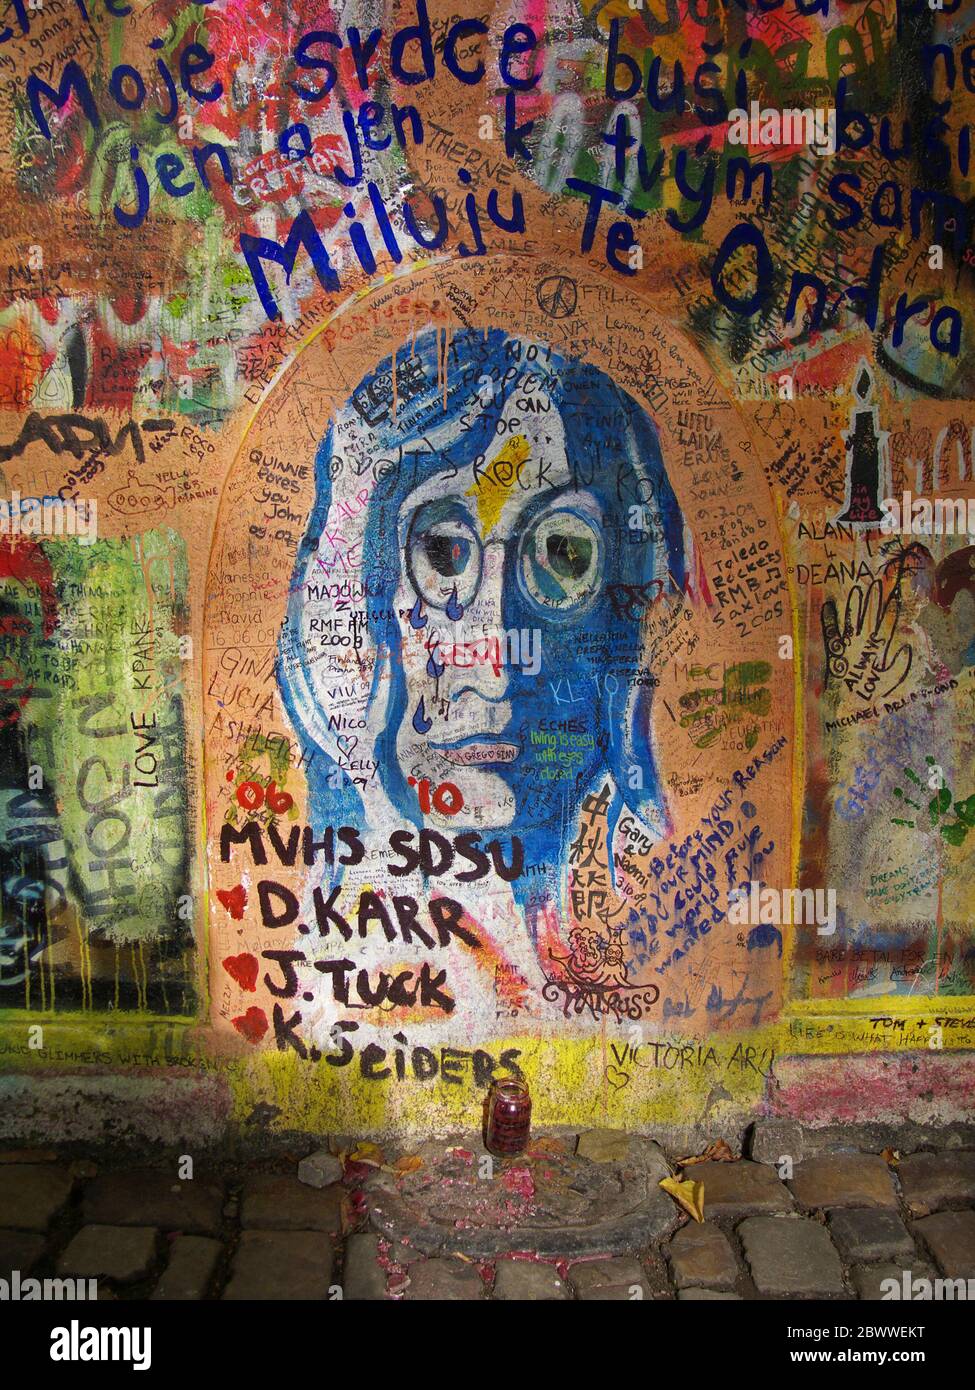 El Muro de Lennon o el Muro de John Lennon en Praga - Praha, República Checa. Graffiti inspirado por John Lennon y los Beatles ha sido pintado aquí desde el th Foto de stock